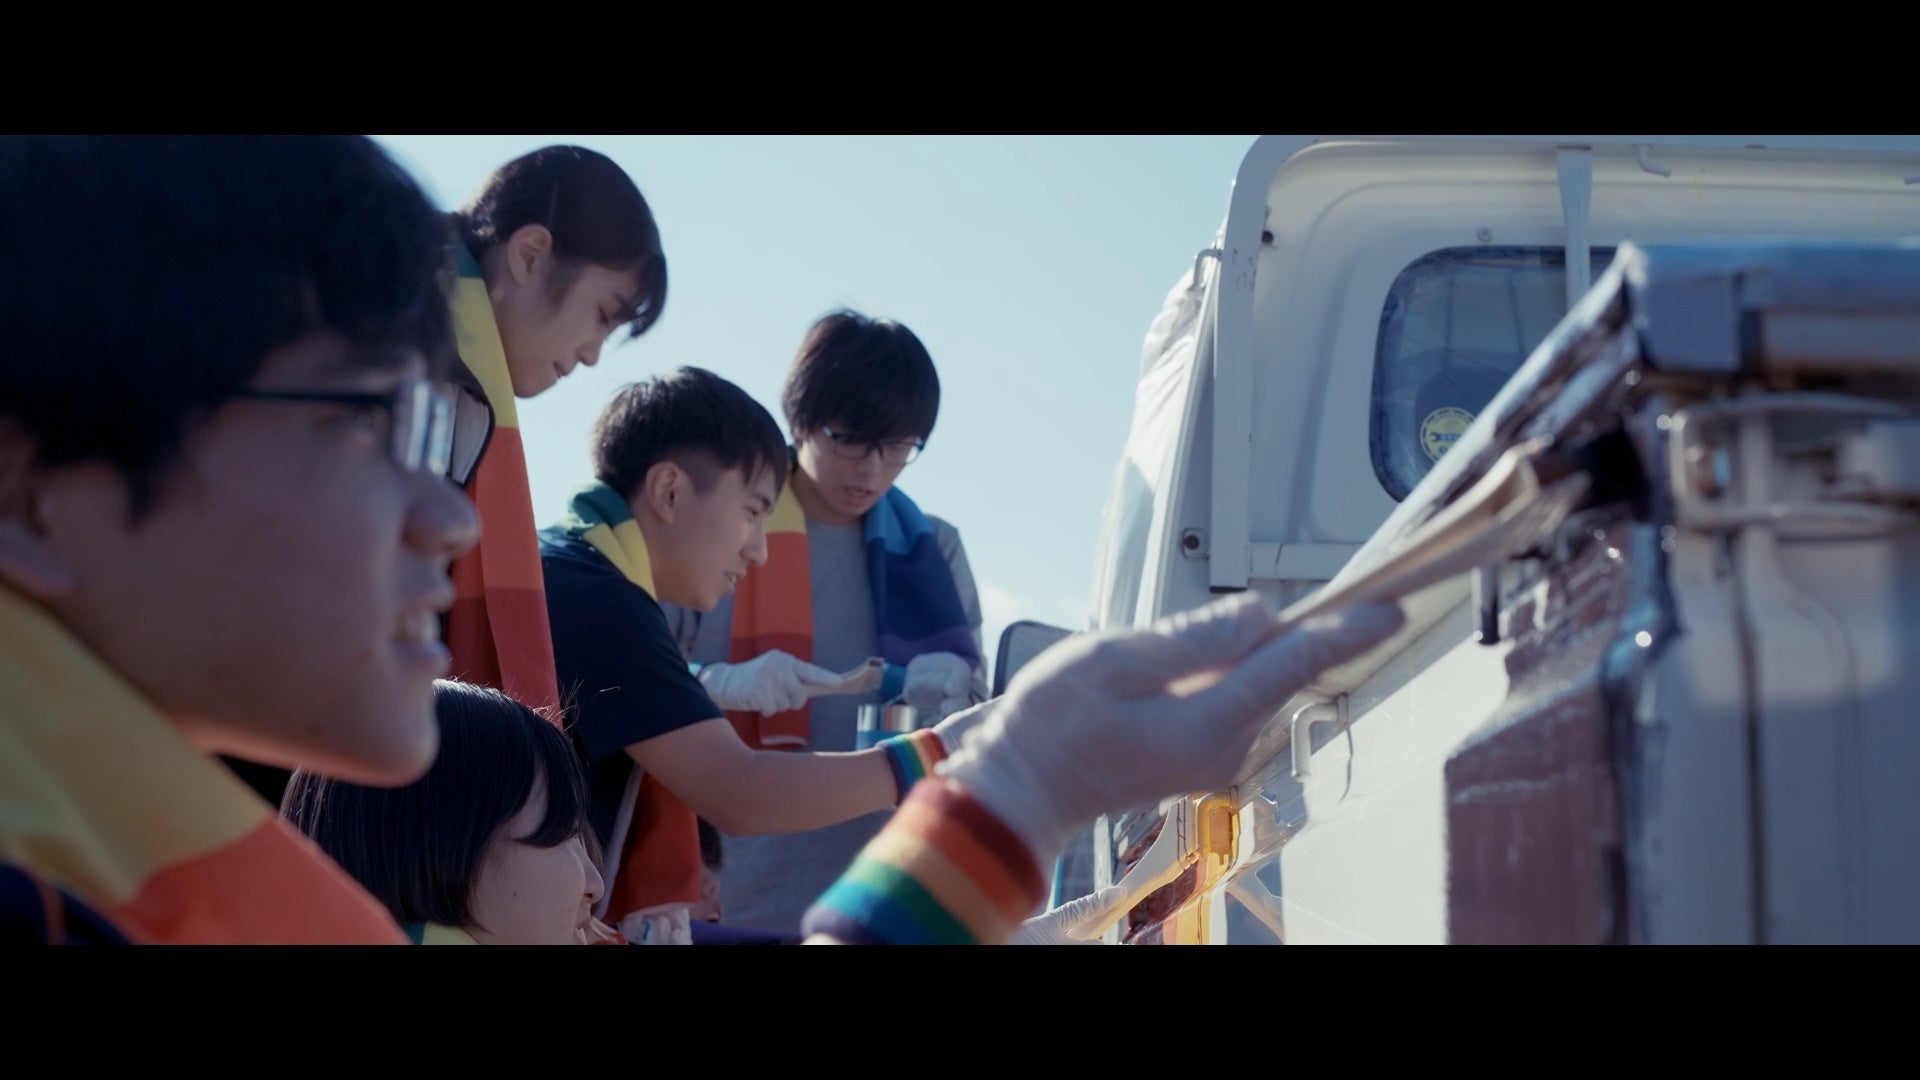 虹の似合うまち、岩手県・雫石町がプロモーション動画「Rainbows everywhere, Shizukuishi」を公開！令和3年度は9日に1度、虹が出現！ ｜動画には地元の学生など町民が多数出演